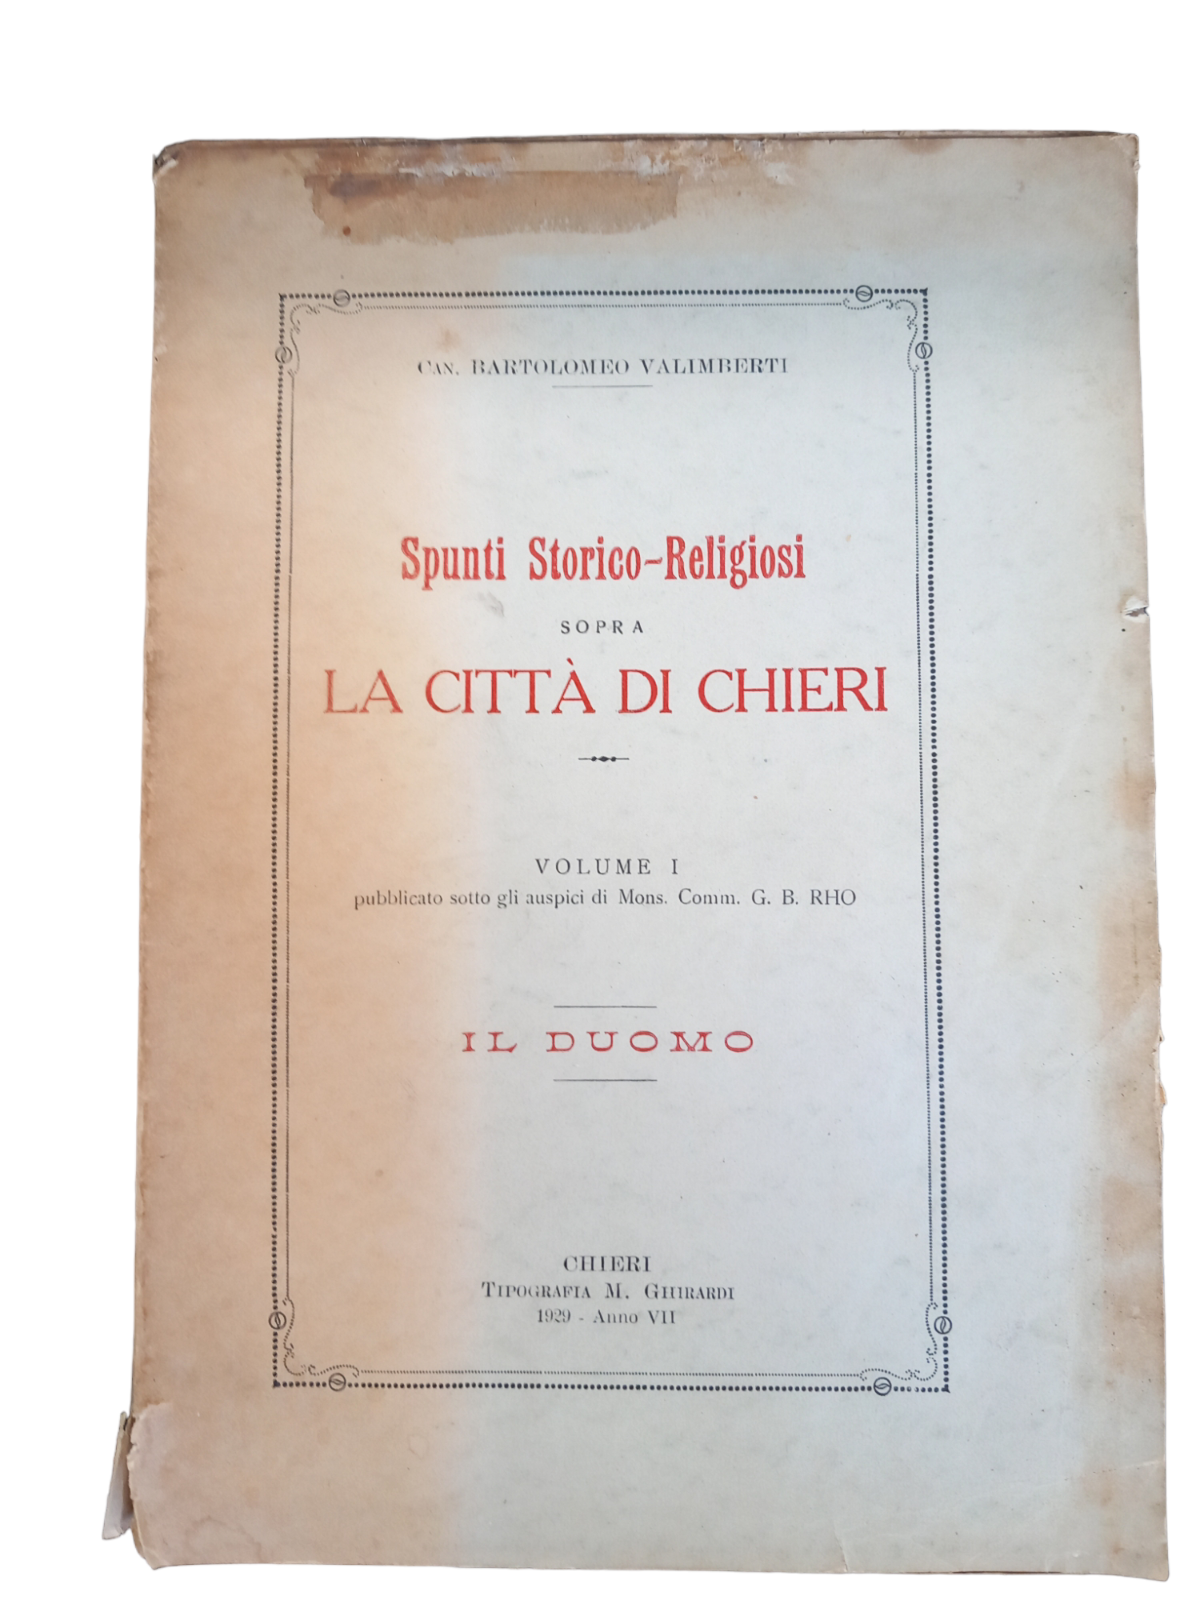 Spunti Storico-Religiosi sopra La Città di Chieri volume 1 GHIRARDI 1929